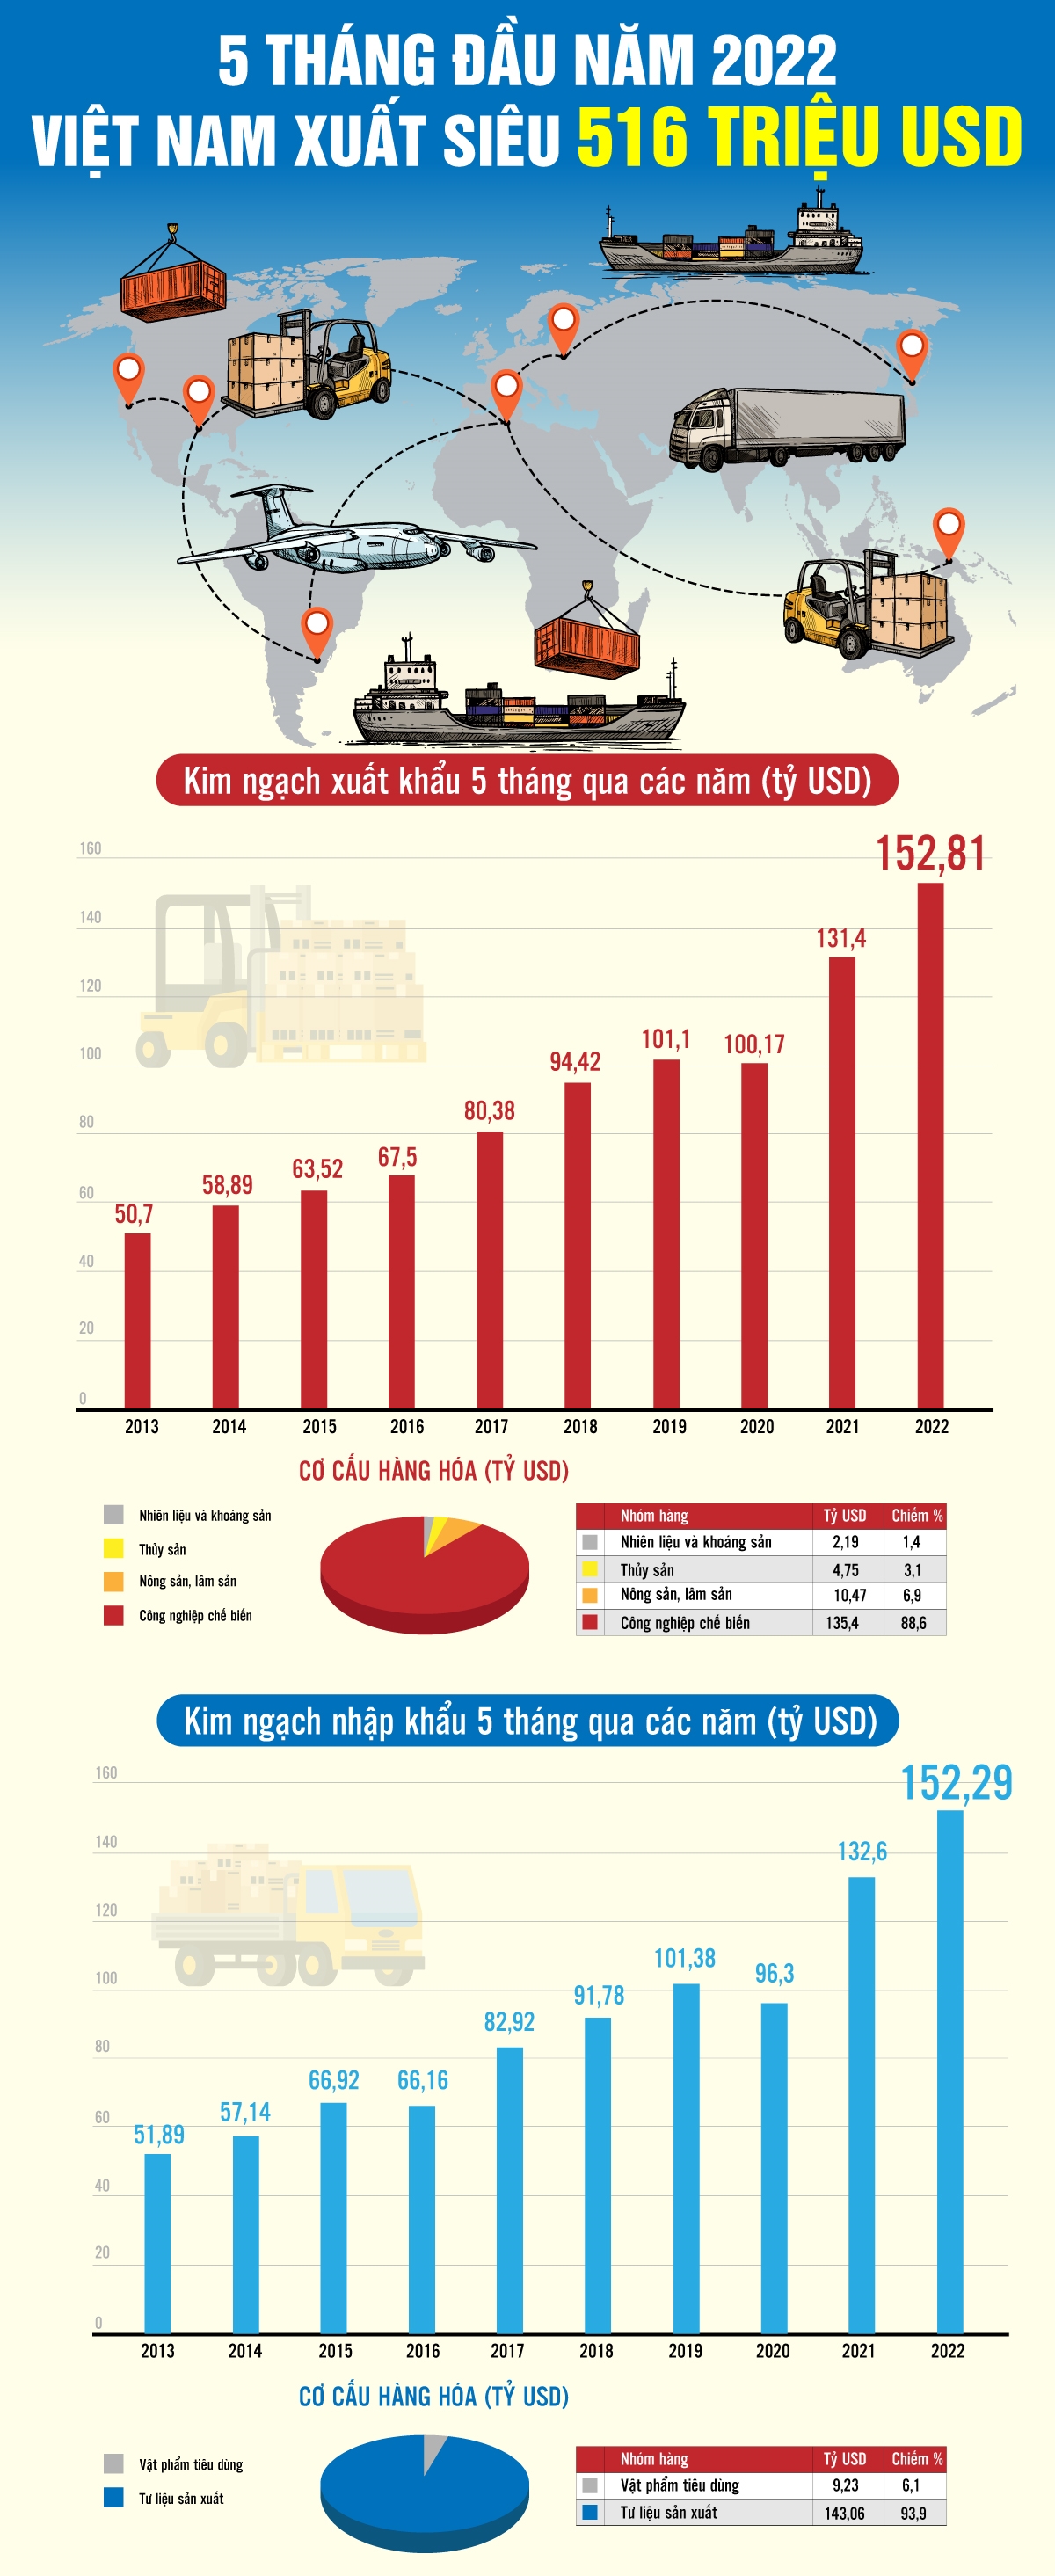 5 tháng đầu năm 2022 Việt Nam xuất siêu 516 triệu USD